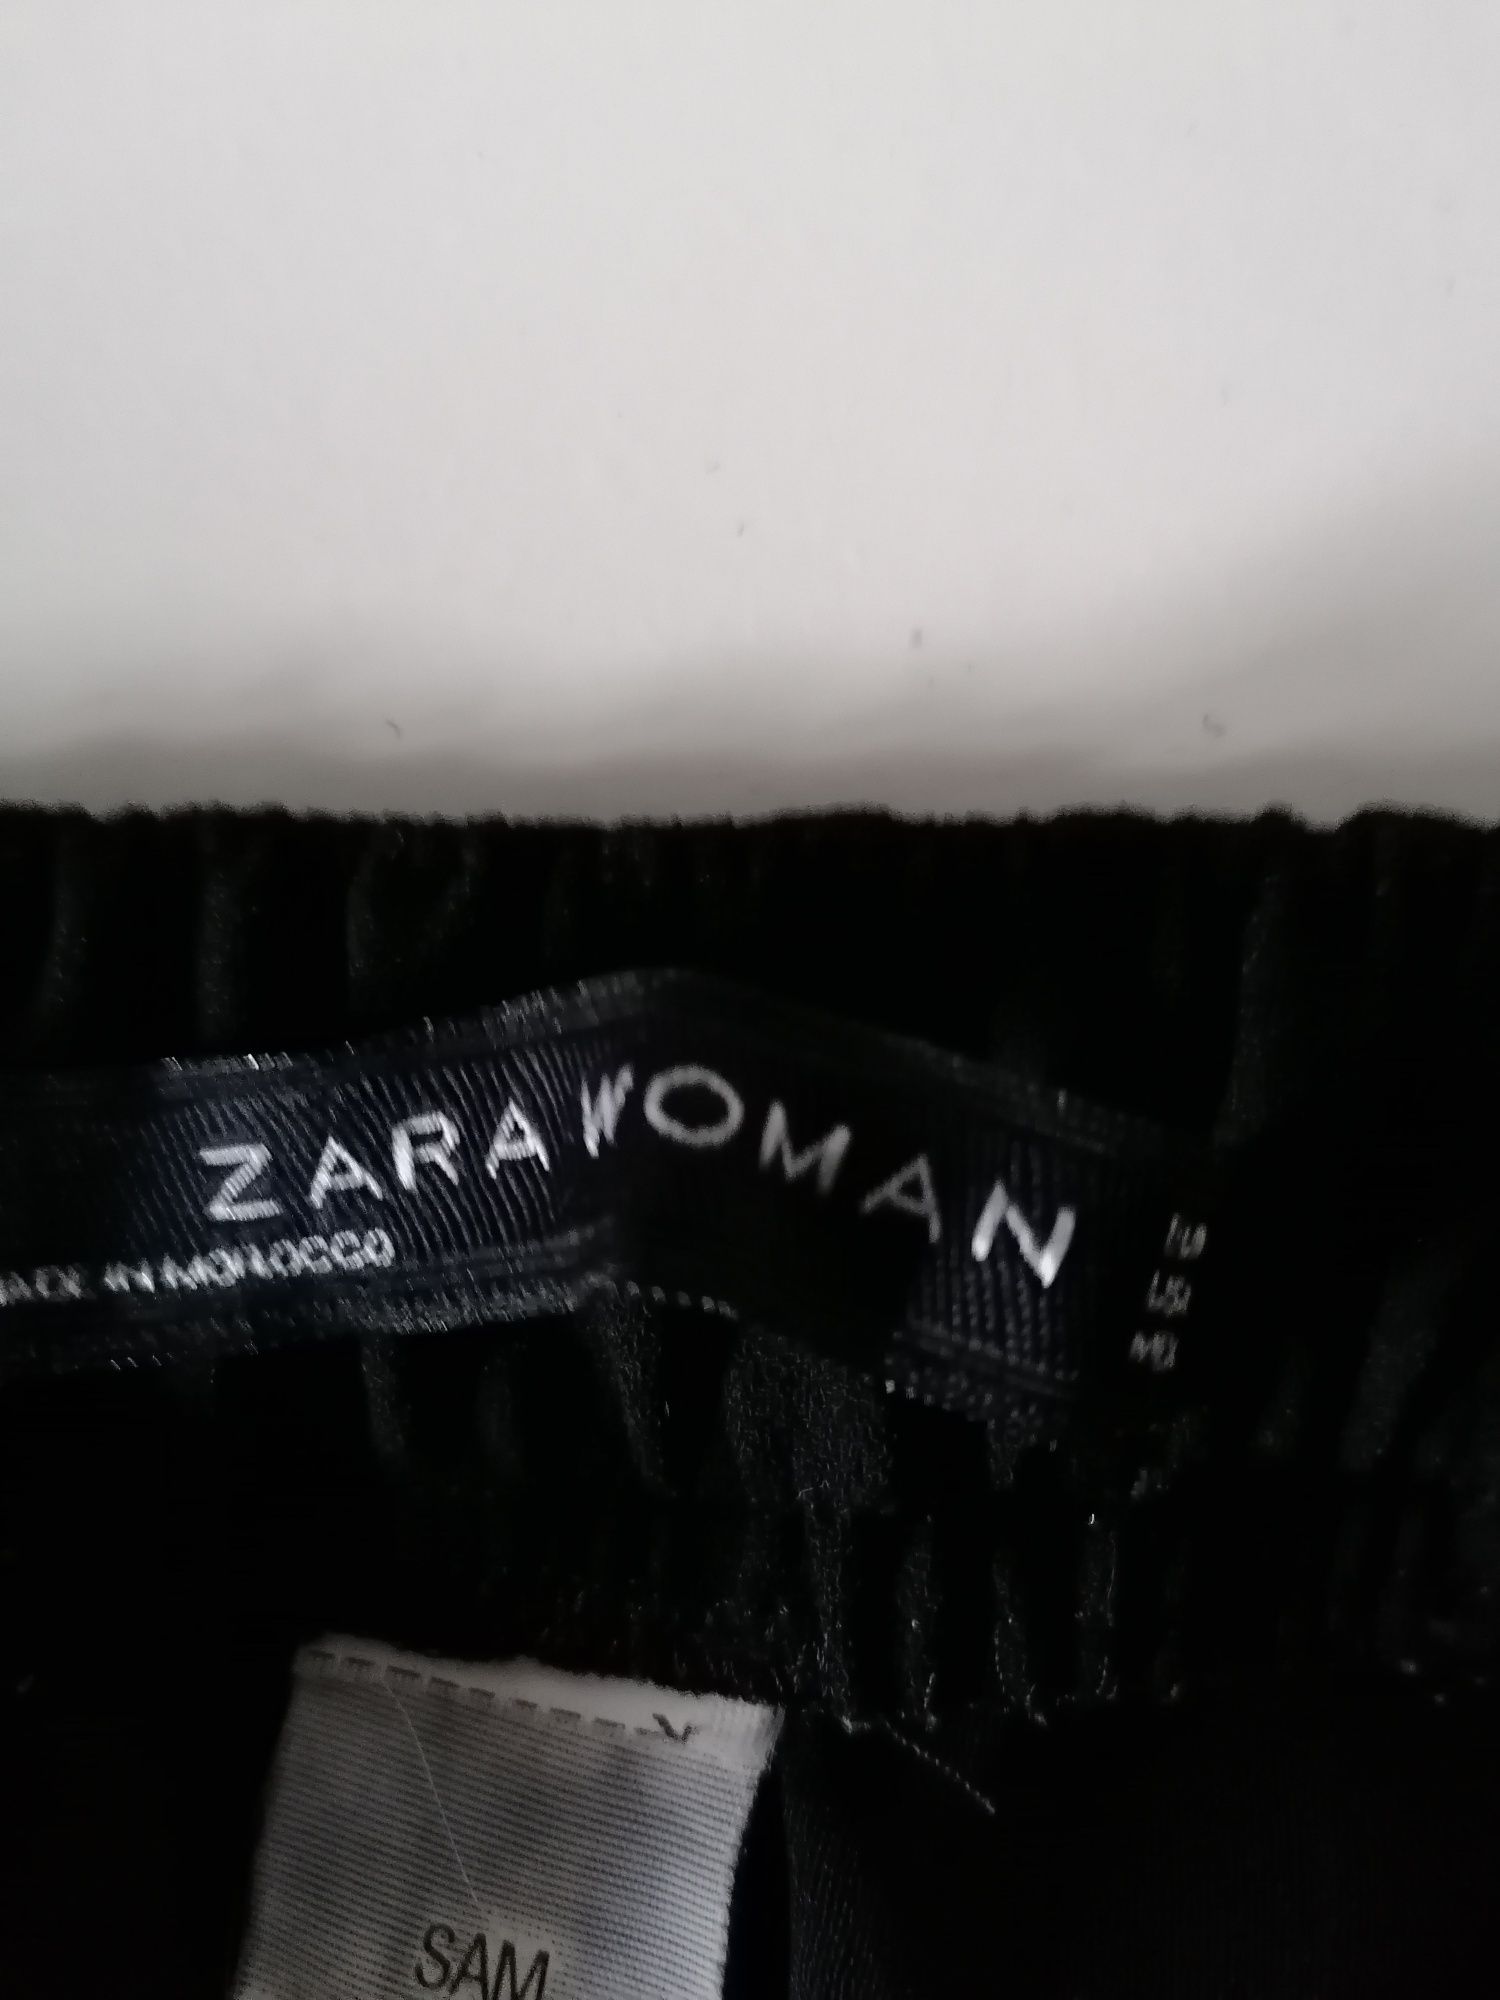 Spodnie firmy Zara